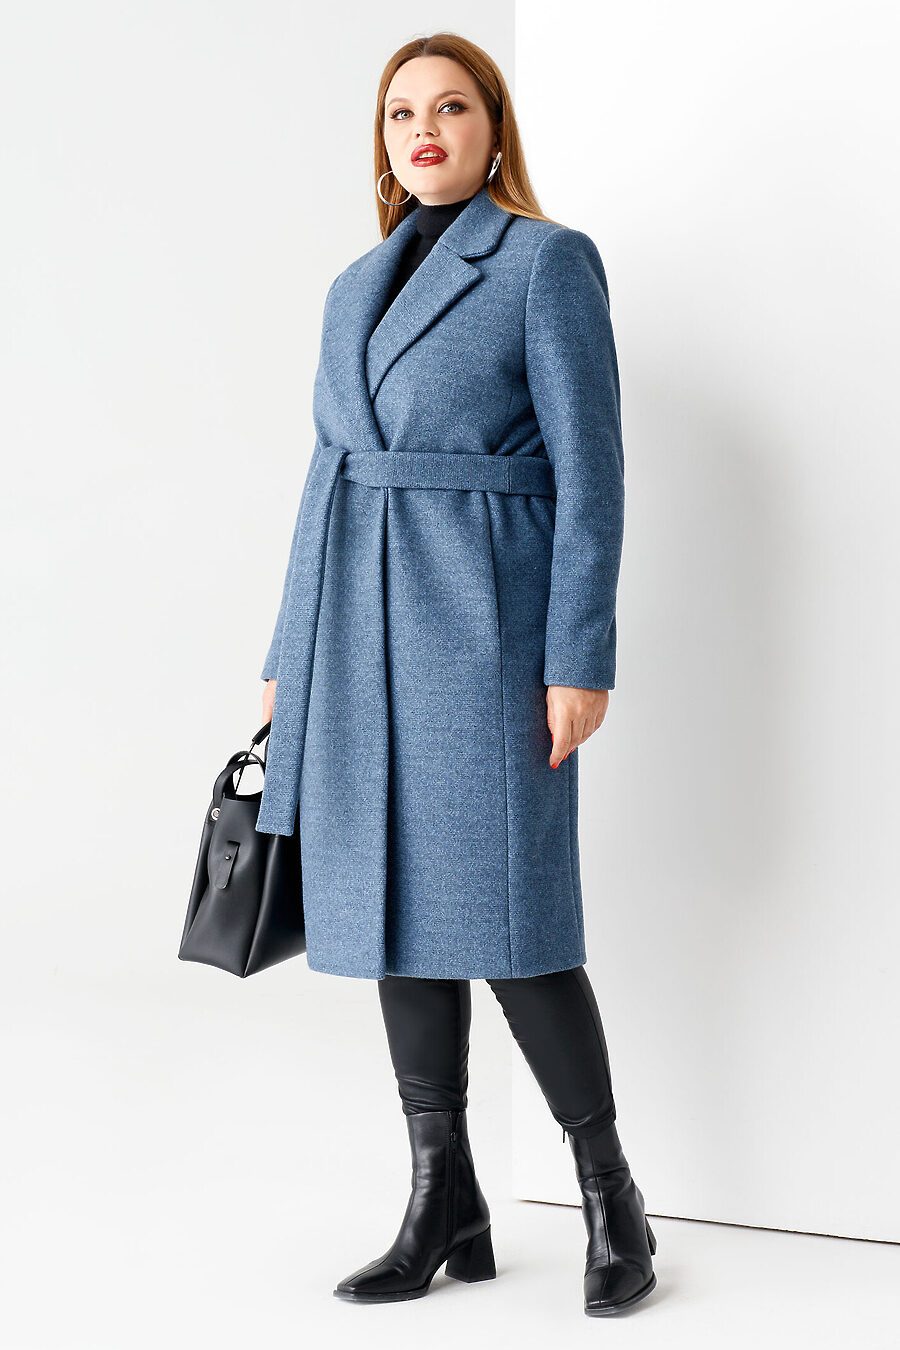 Пальто для женщин PANDA 708638 купить оптом от производителя. Совместная покупка женской одежды в OptMoyo